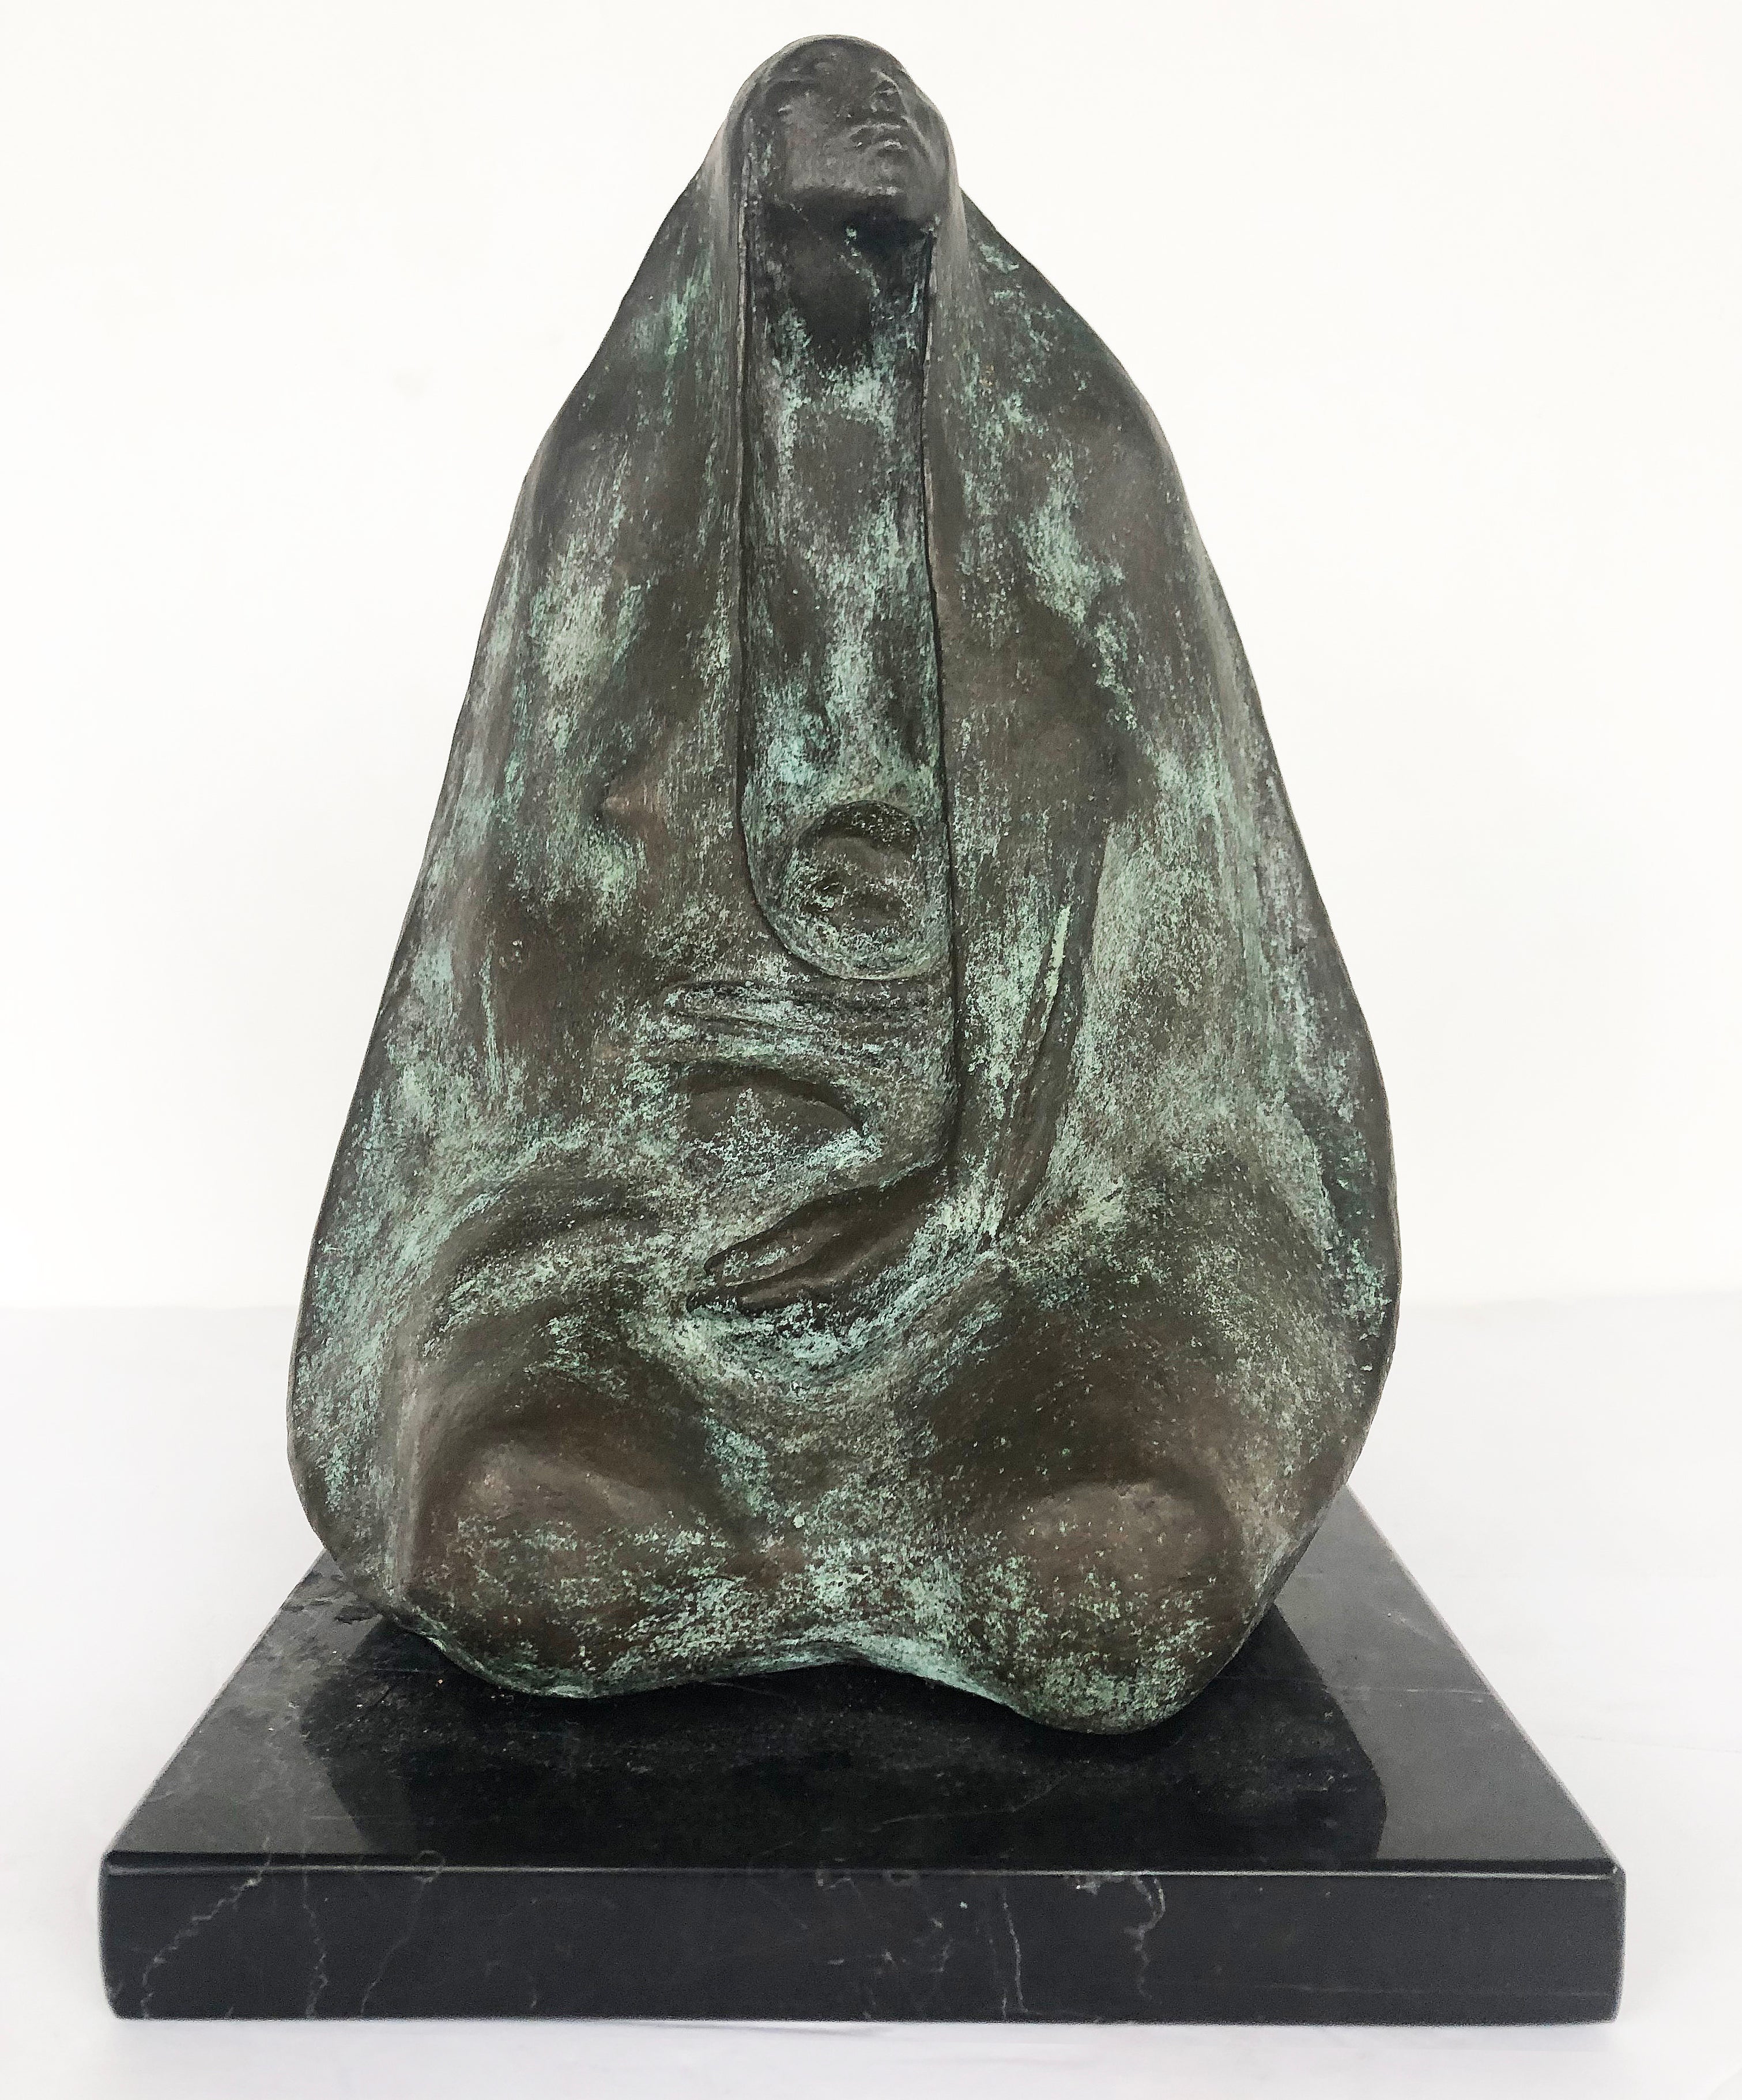 Francisco Zúñiga Patinierte Bronze-Skulptur auf Marmorsockel

Zum Verkauf angeboten wird eine originale Bronzeskulptur von Francisco Zúñiga (1912 - 1998) mit grüner Patina, die eine Mutter mit Kind darstellt. Die Skulptur steht auf einem